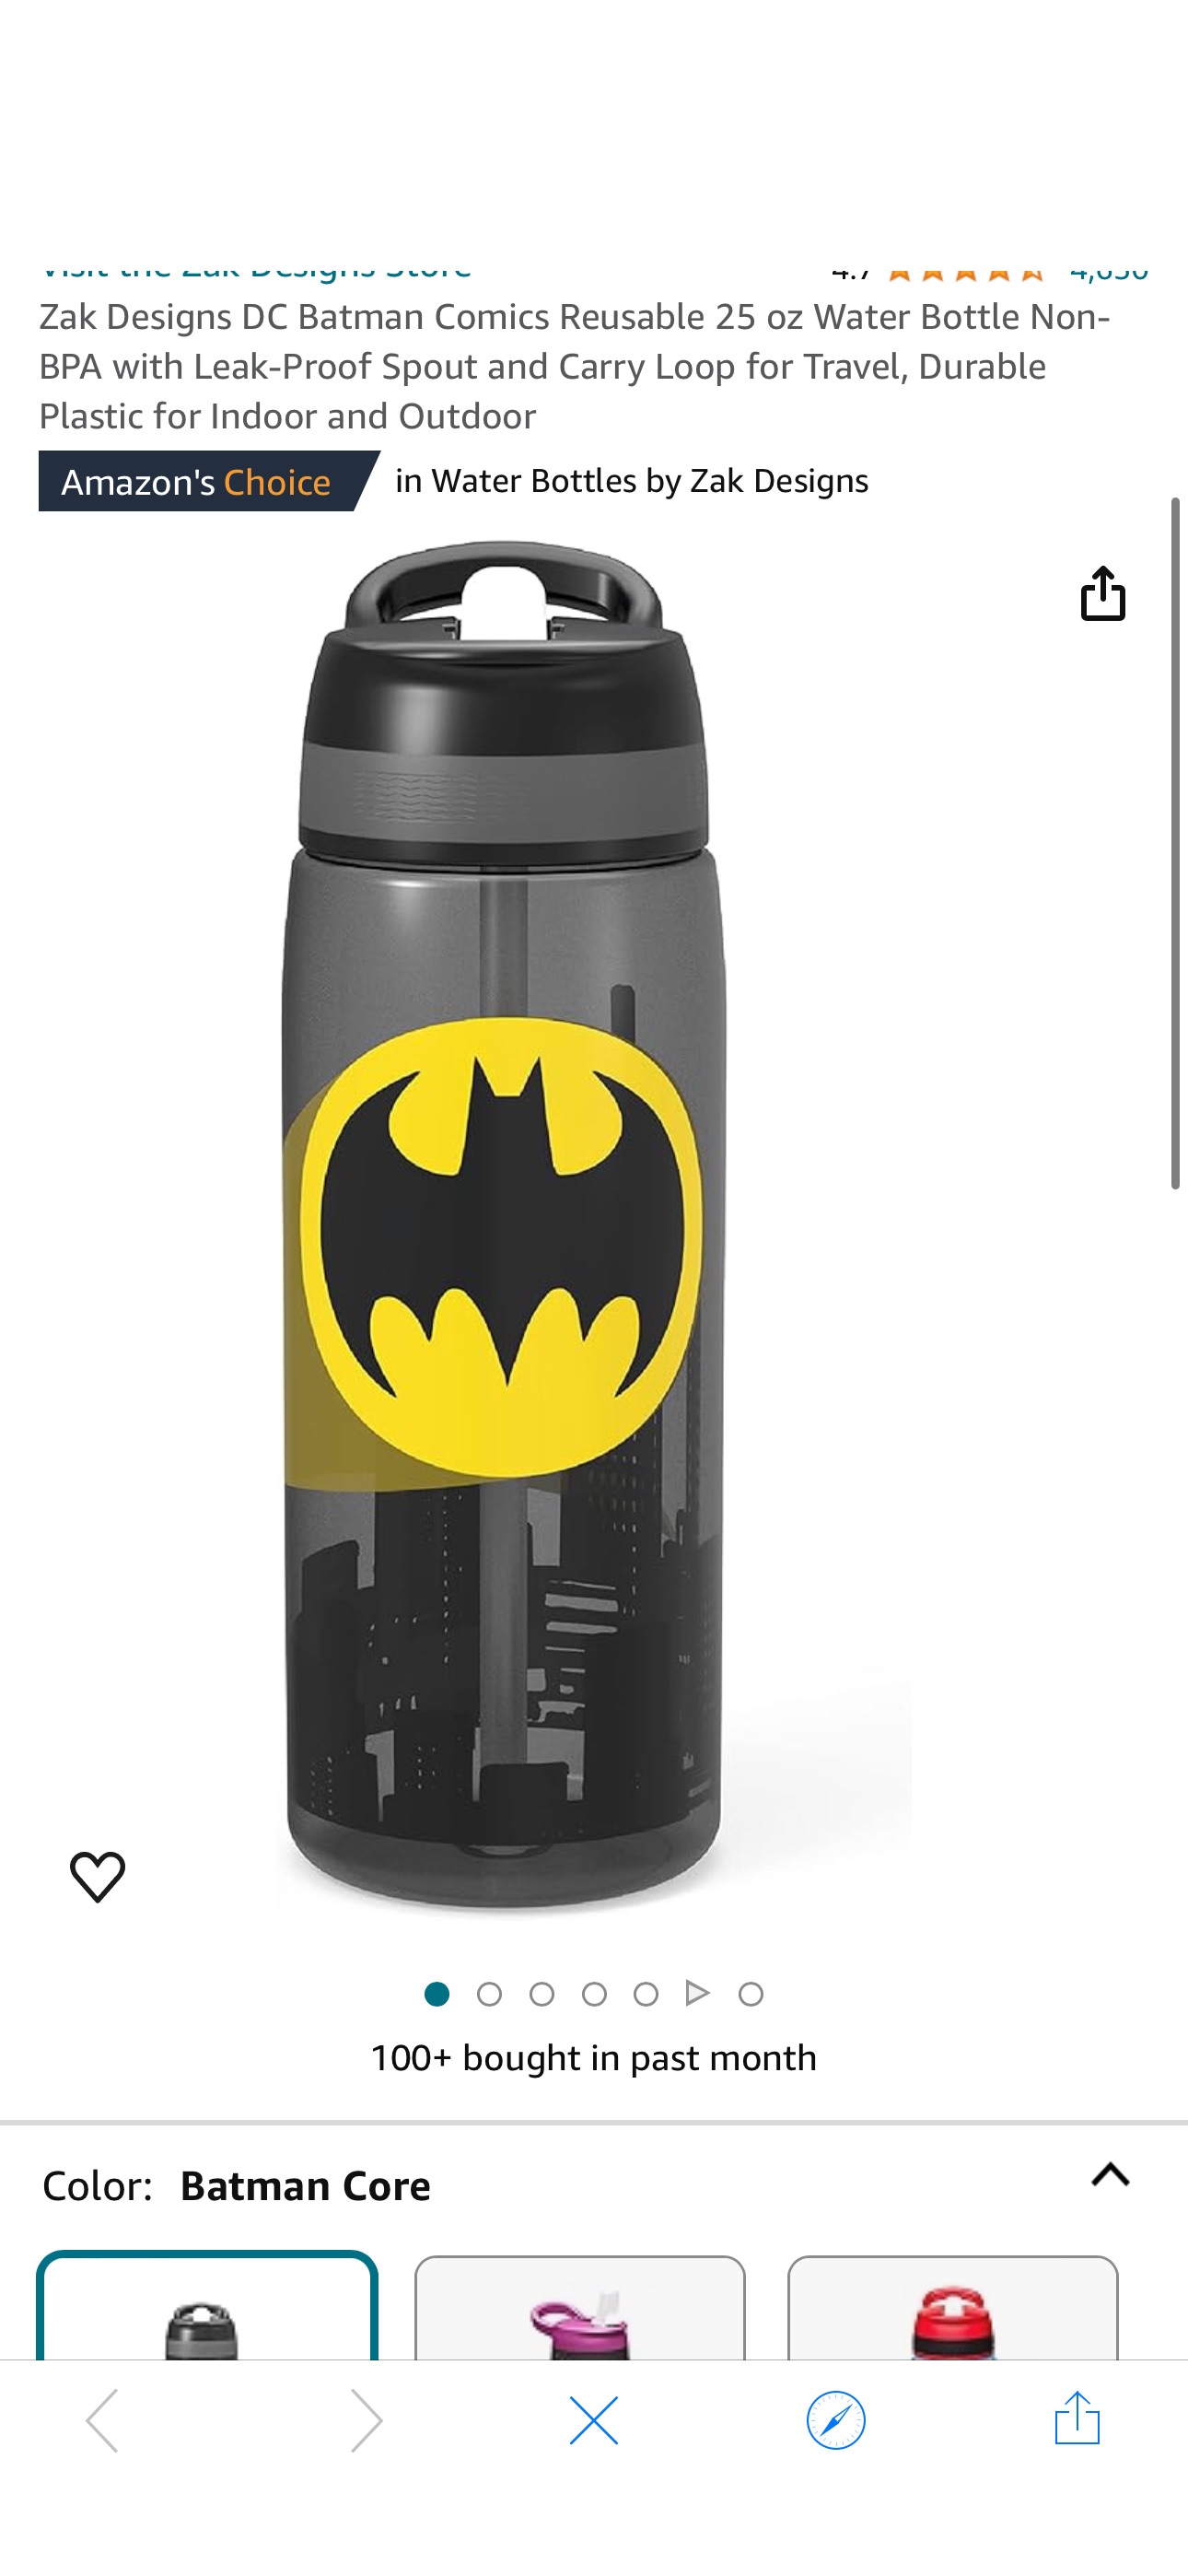 Amazon.com: Zak Designs DC Batman Comics Reusable 25 oz Water Bottle Non-BPA with Leak-Proof Spout and Carry Loop clip coupon